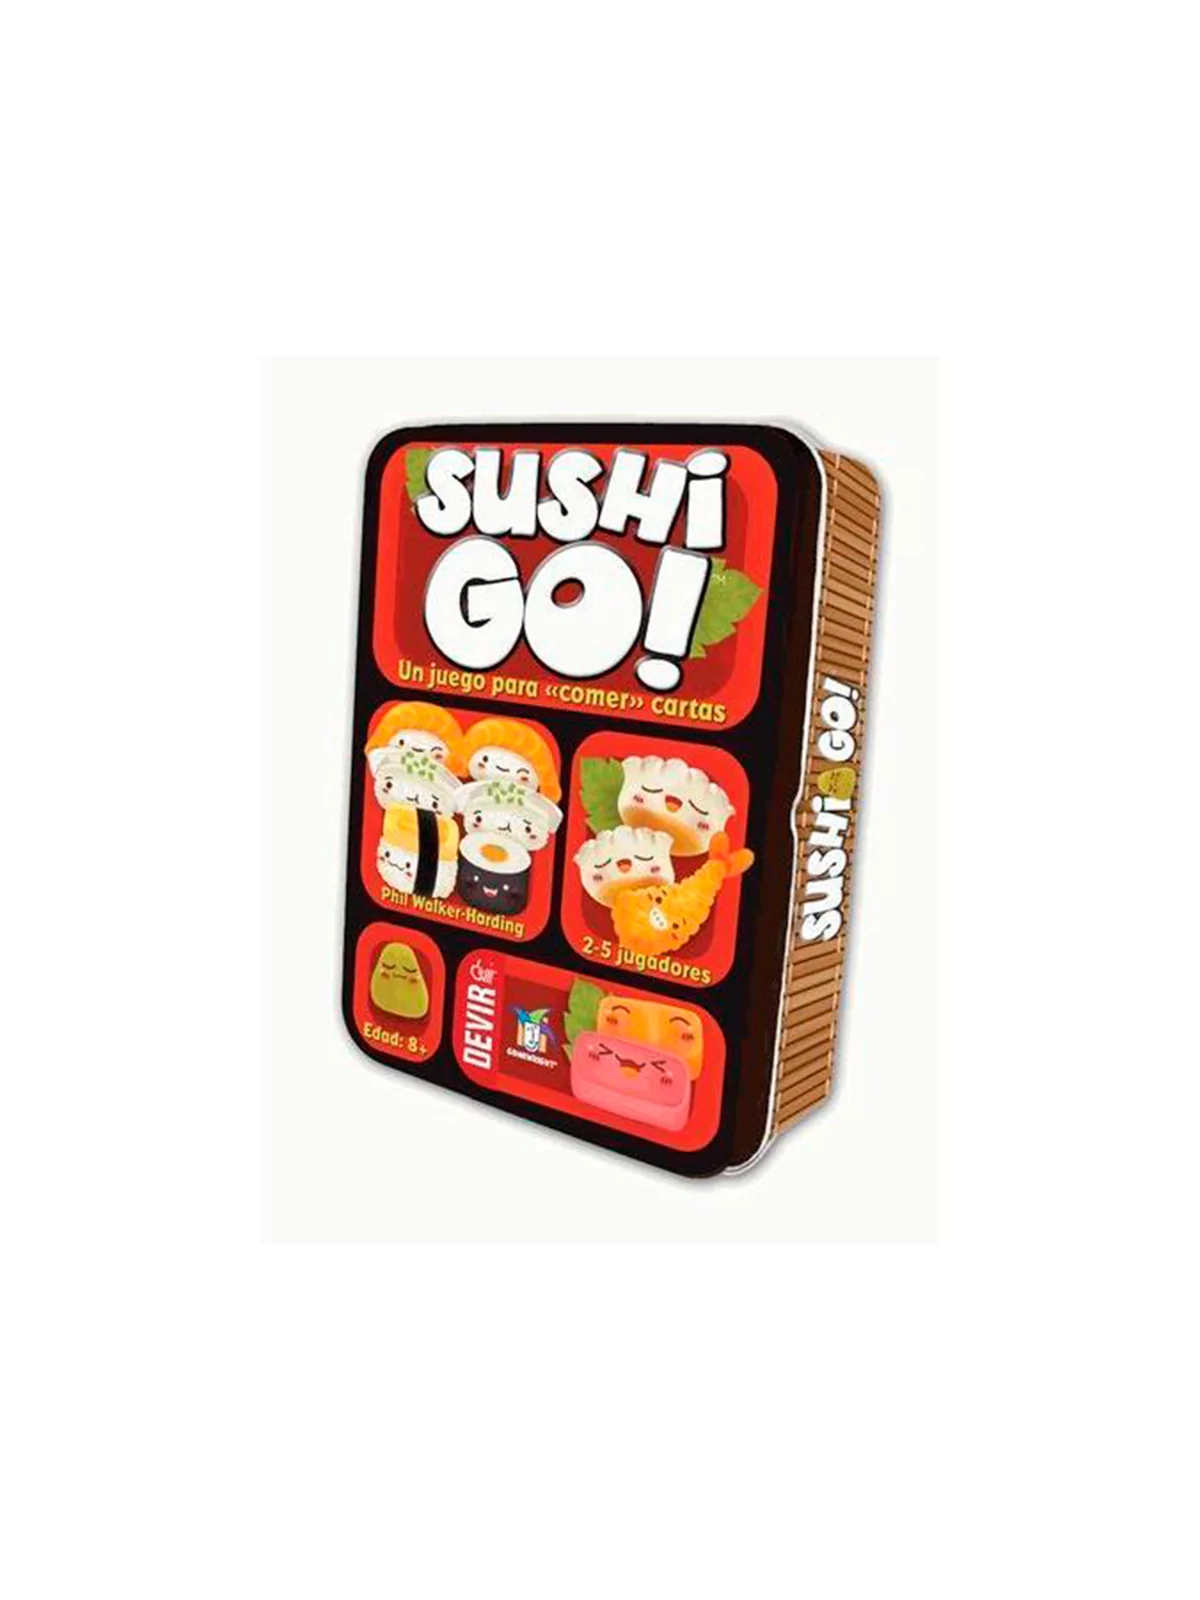 Comprar Sushi Go! barato al mejor precio 10,00 € de Devir